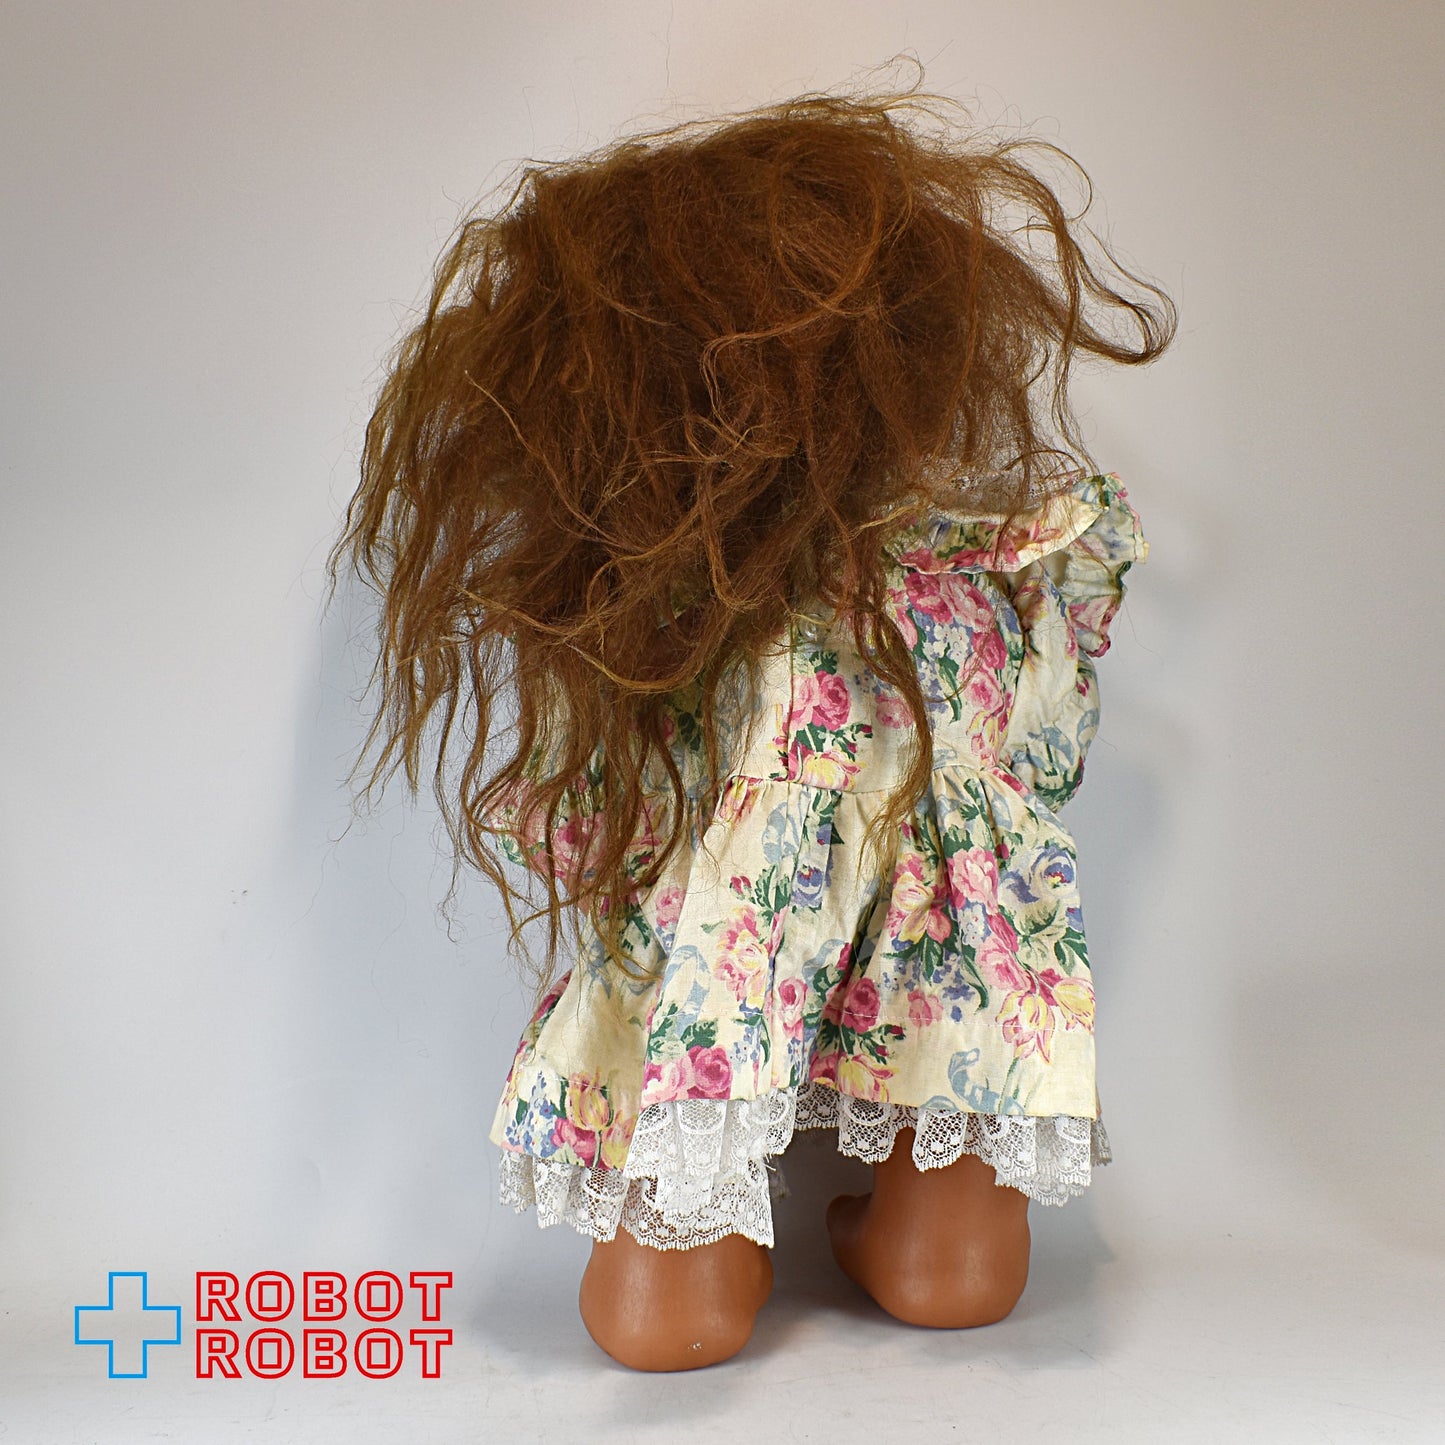 DAM ビッグ・トロール 女の子 40センチ 1979 トロル人形